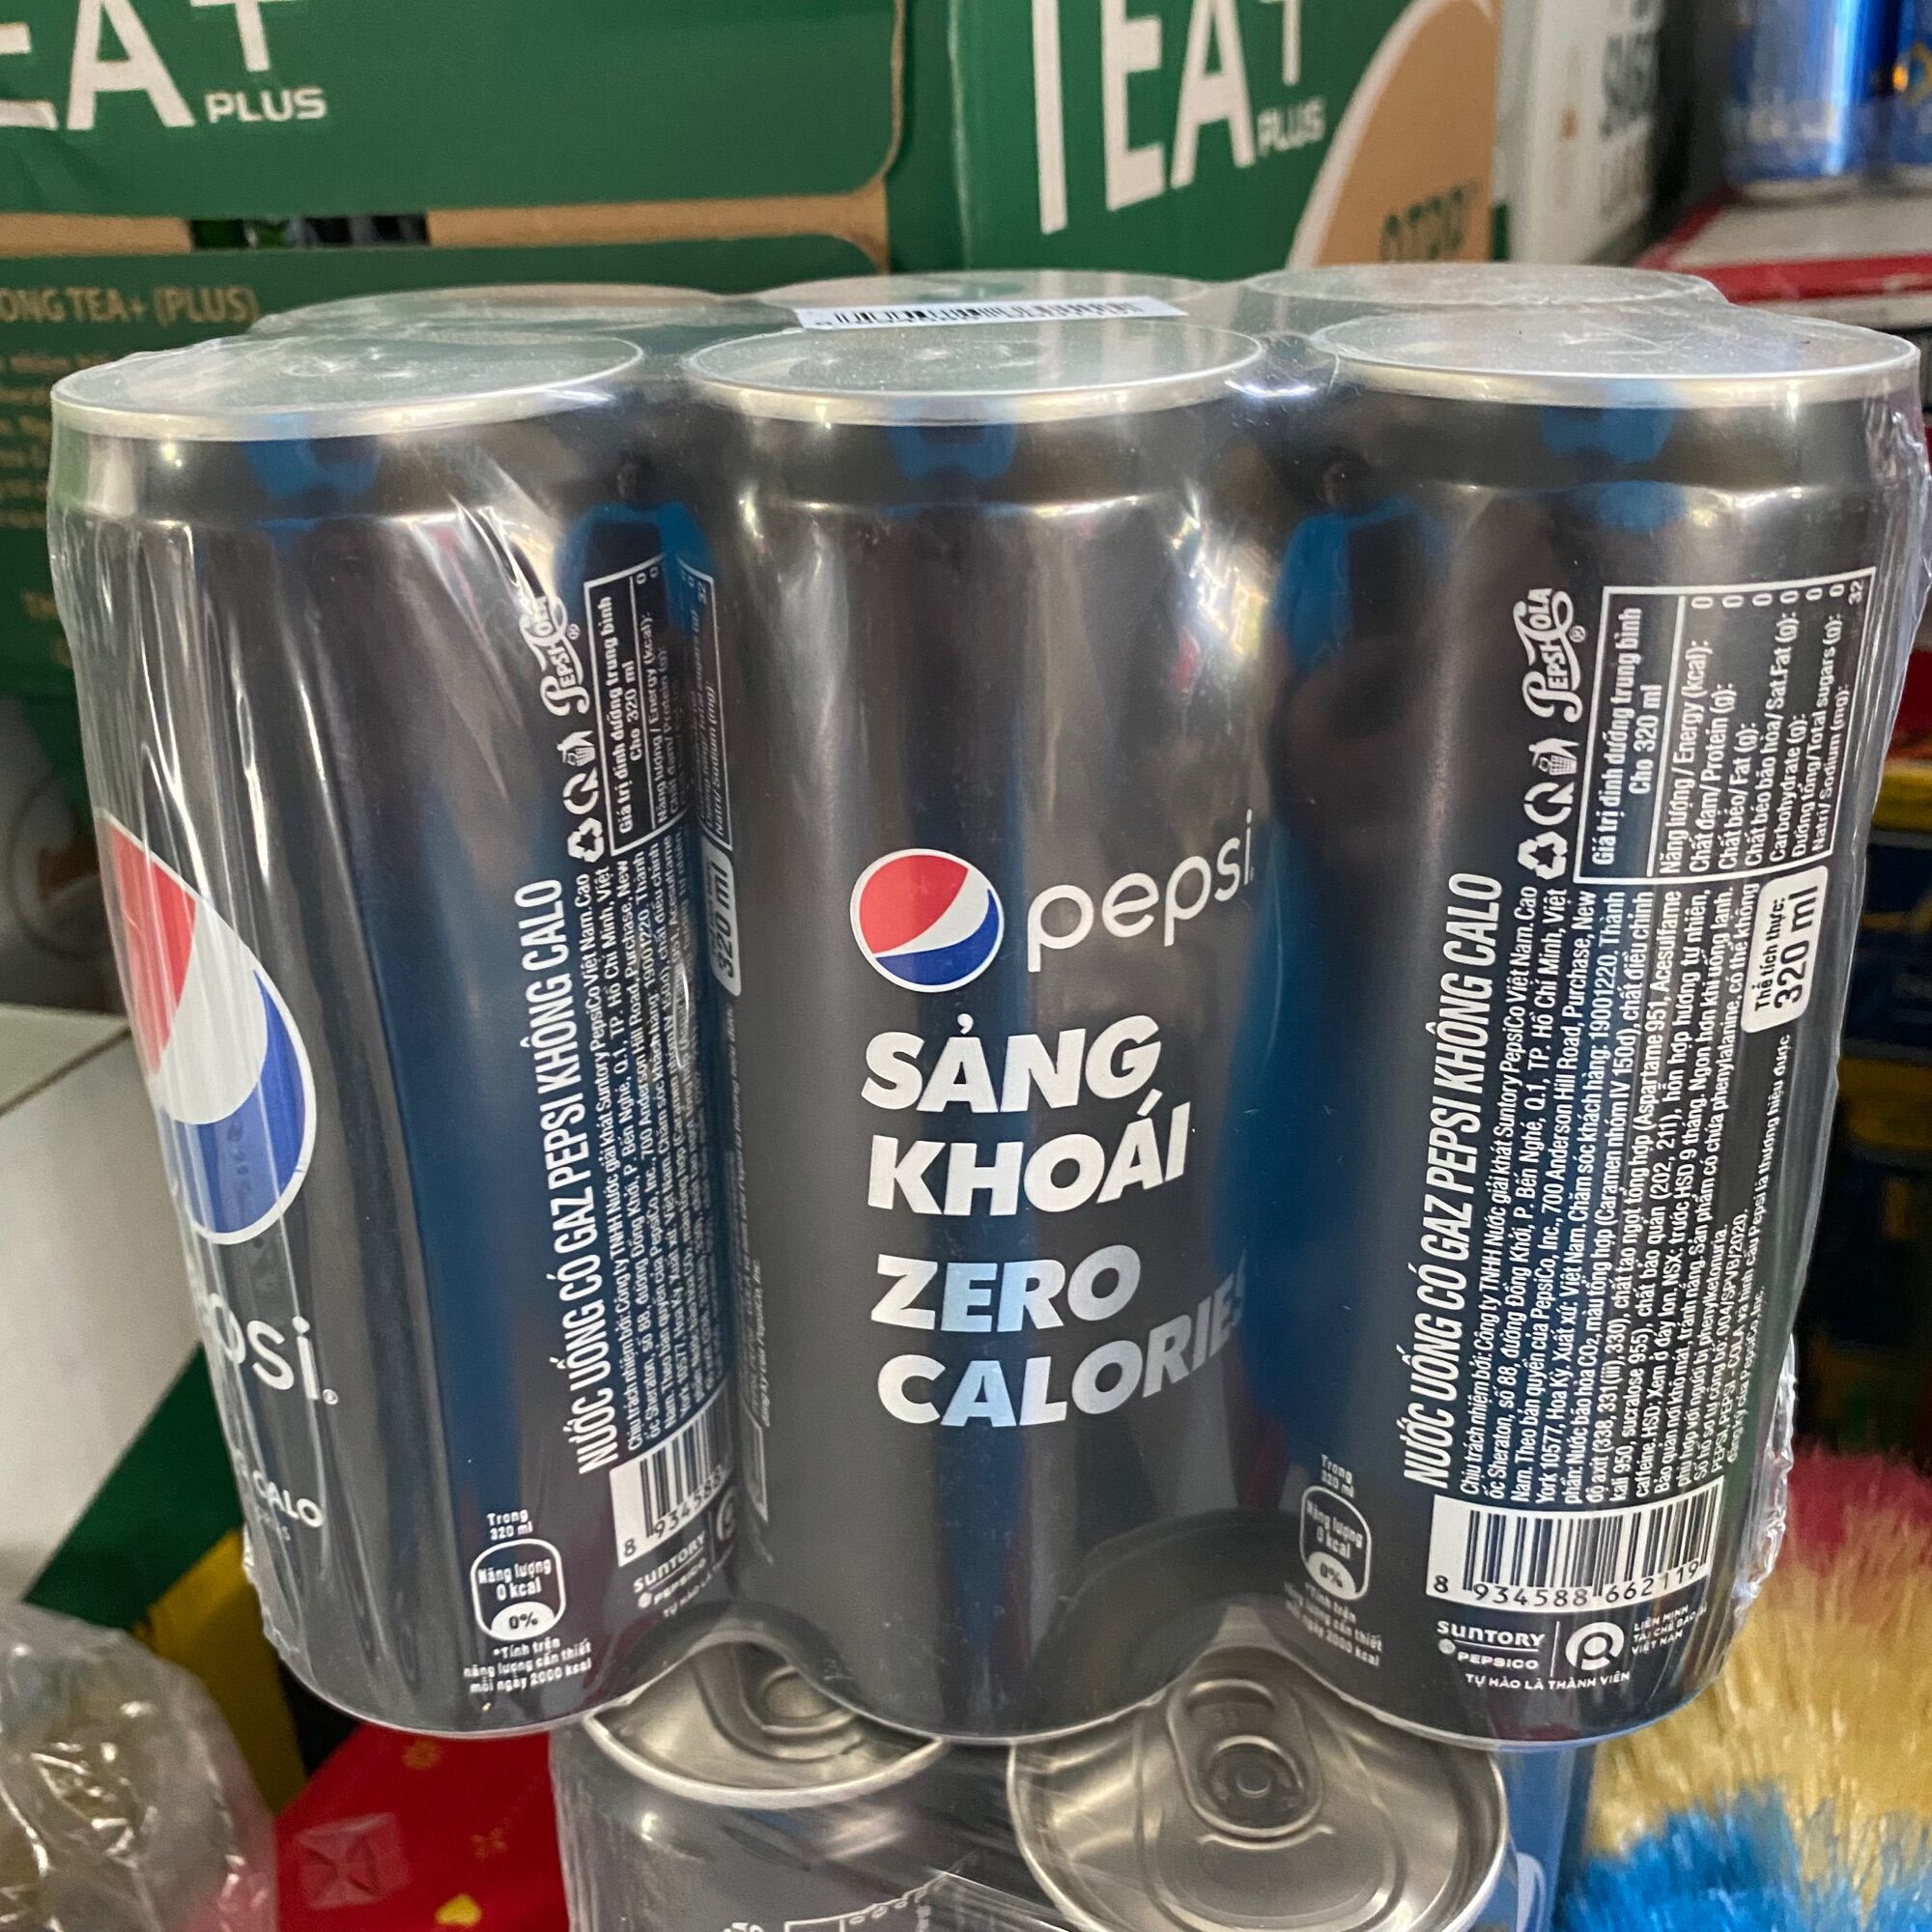 Lóc 6 lon hoặc lẻ 1 lon Nước ngọt Pepsi không calo 330ml x 6 . vui lòng chọn phân loại